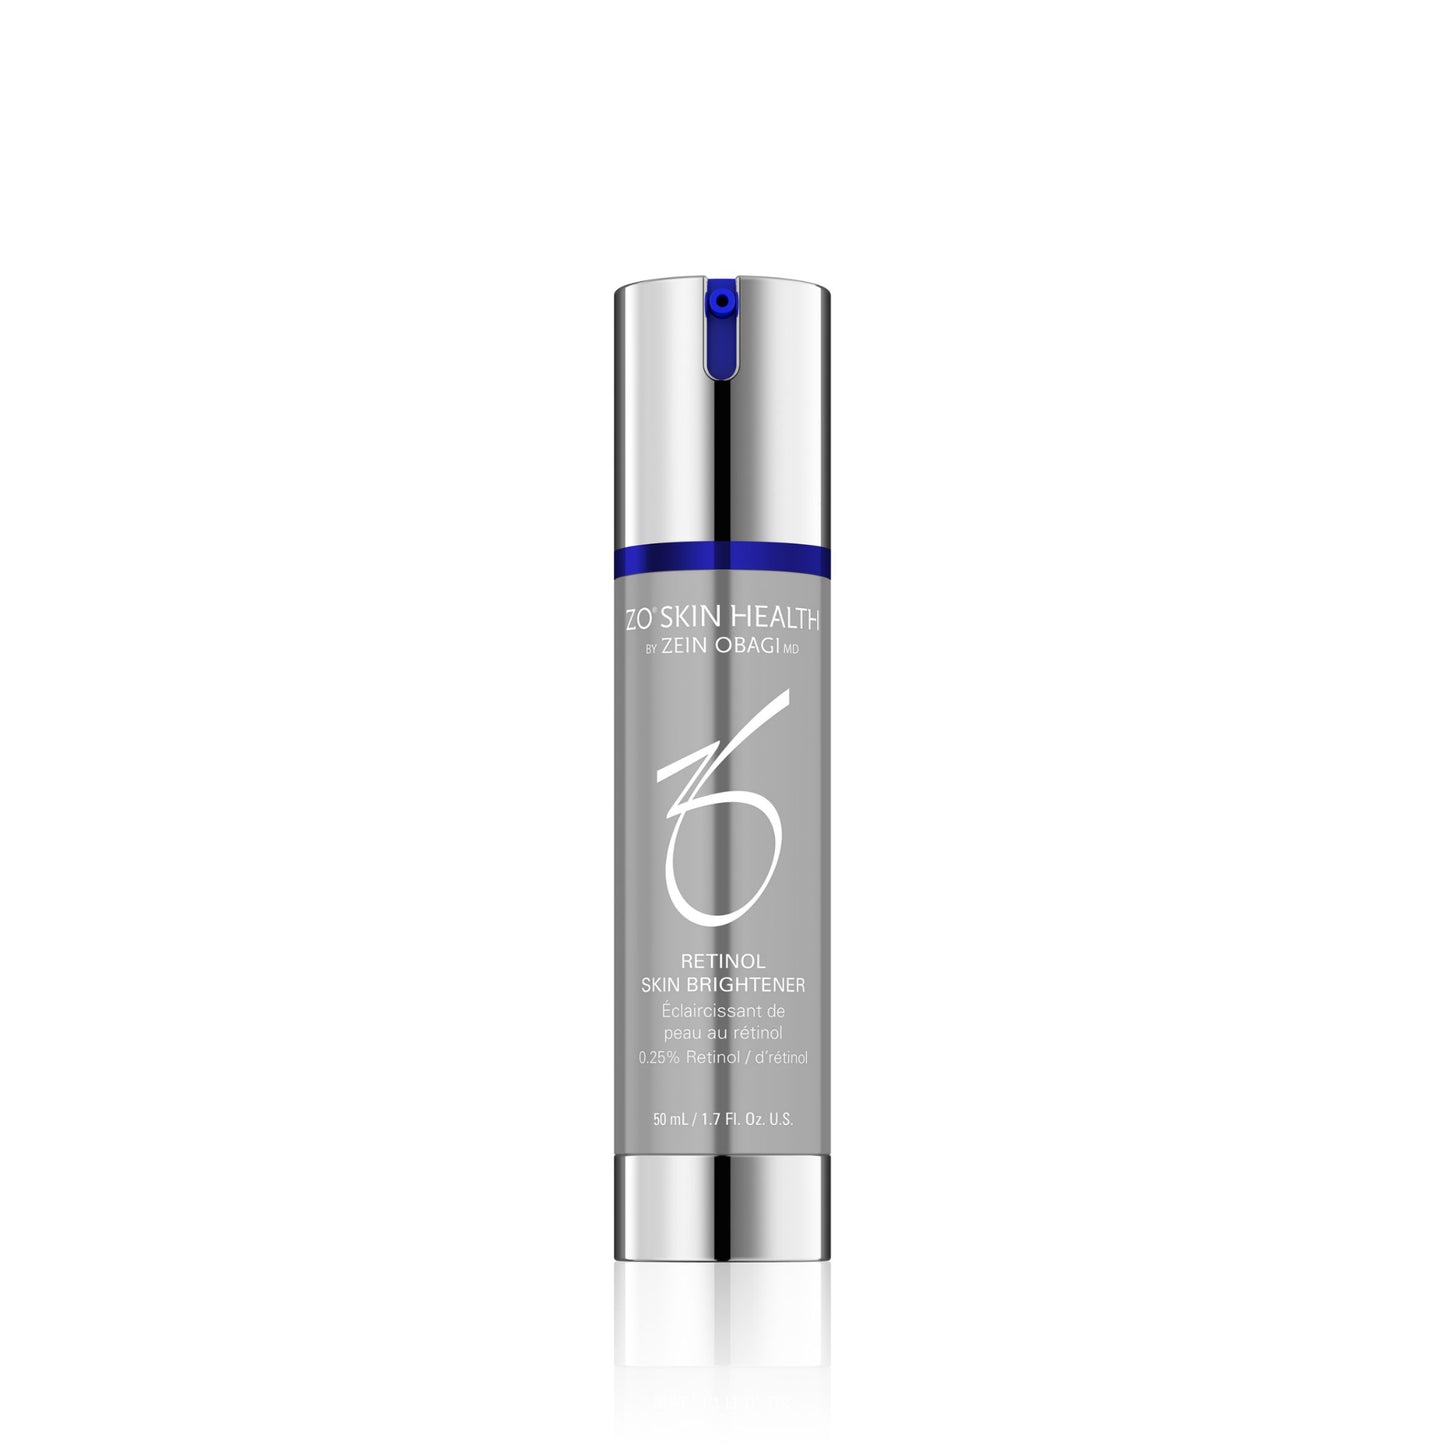 ZO Skin Health's Skin Brightener .25% Retinol